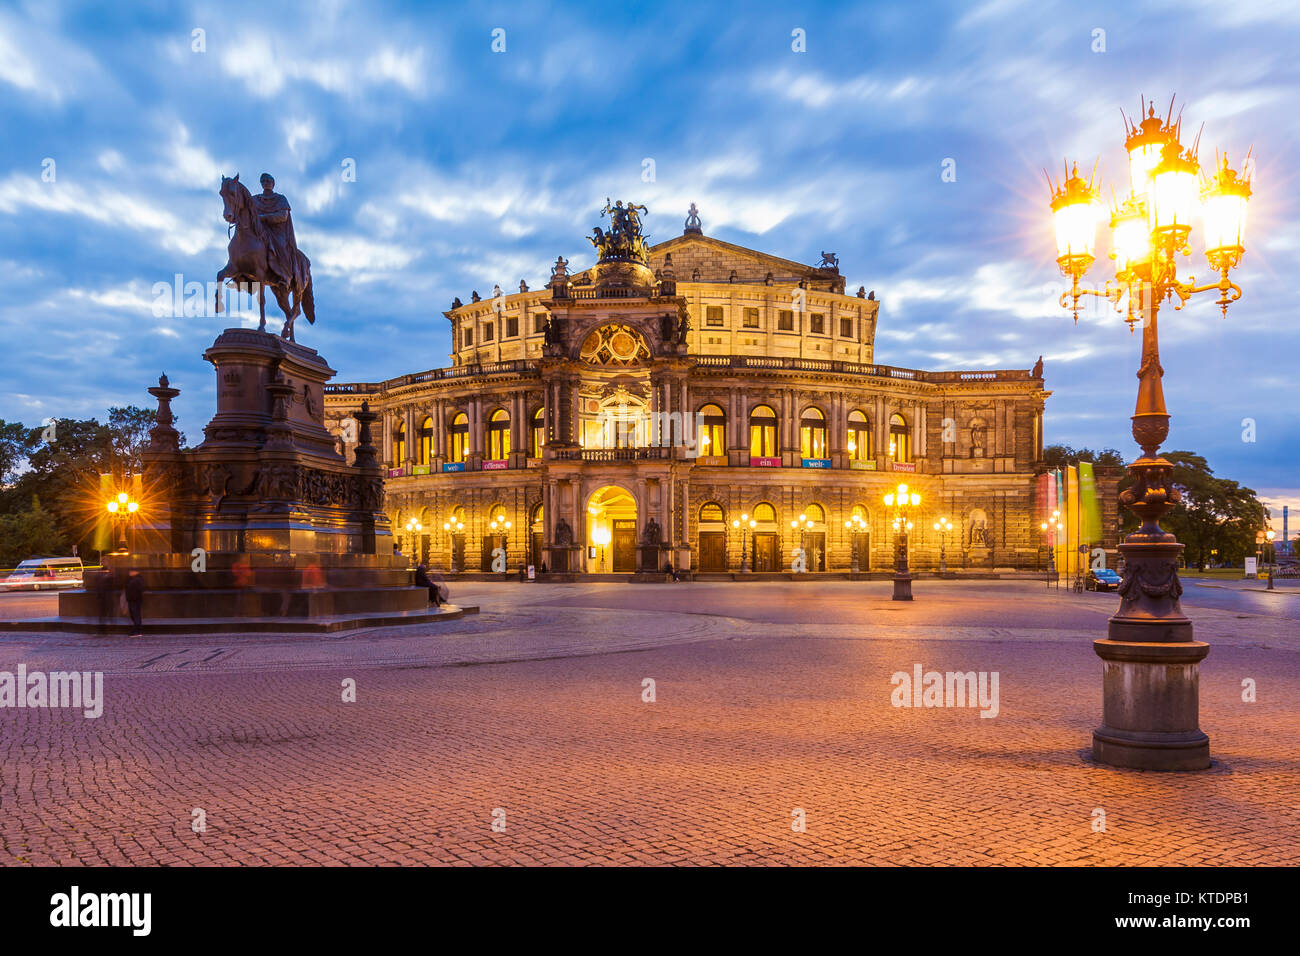 Deutschland, Sachsen, Dresda, Theaterplatz, Semperoper, Oper, Opernhaus Foto Stock